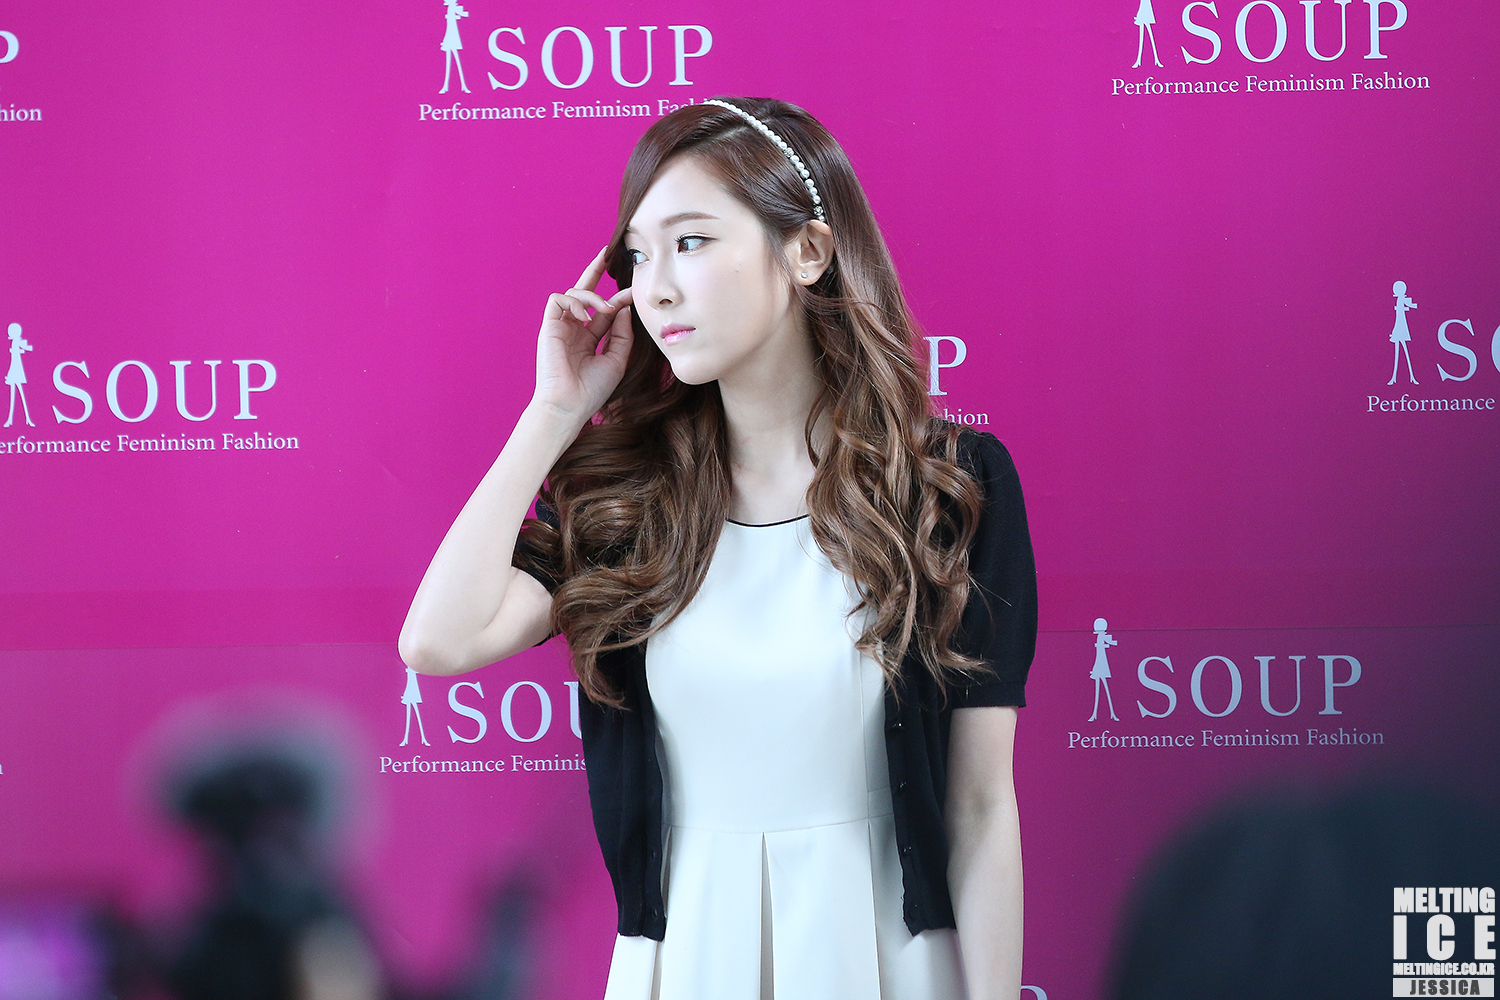 [PIC][04-04-2014]Jessica tham dự buổi fansign cho thương hiệu "SOUP" vào trưa nay - Page 3 2324B442539560B02D0B70